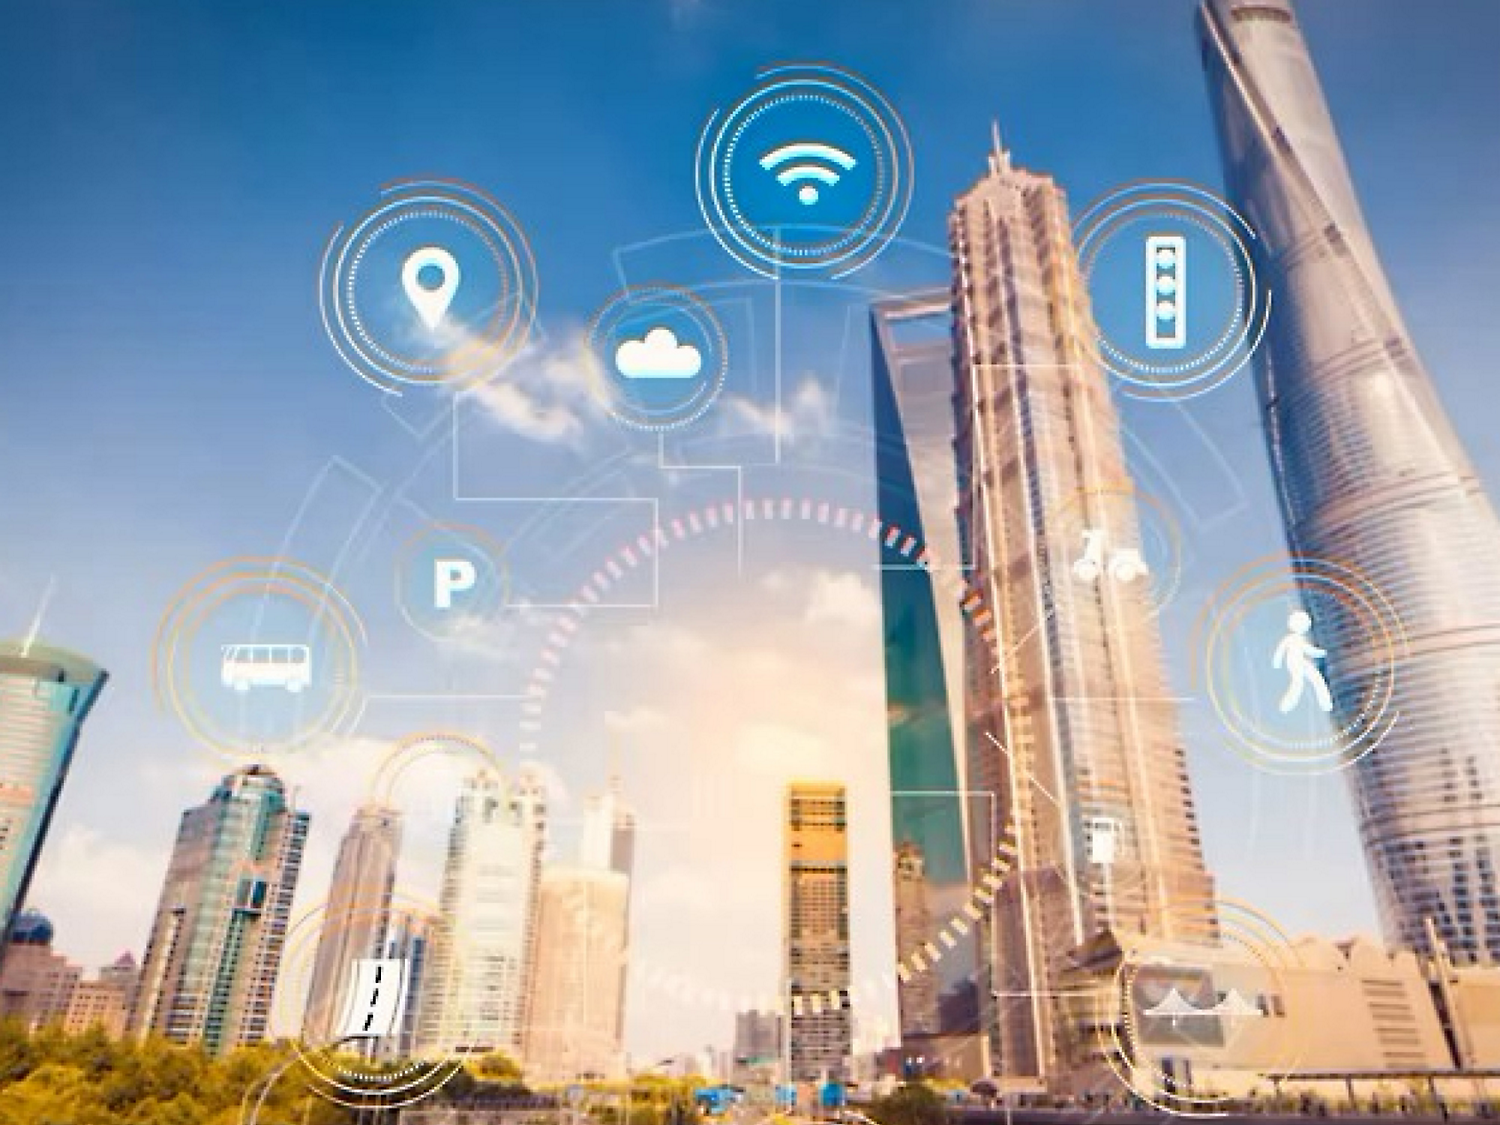 Illustratie van een slimme stad met wolkenkrabbers met digitale pictogrammen die wifi, cloud-computing en andere technologieën vertegenwoordigen.